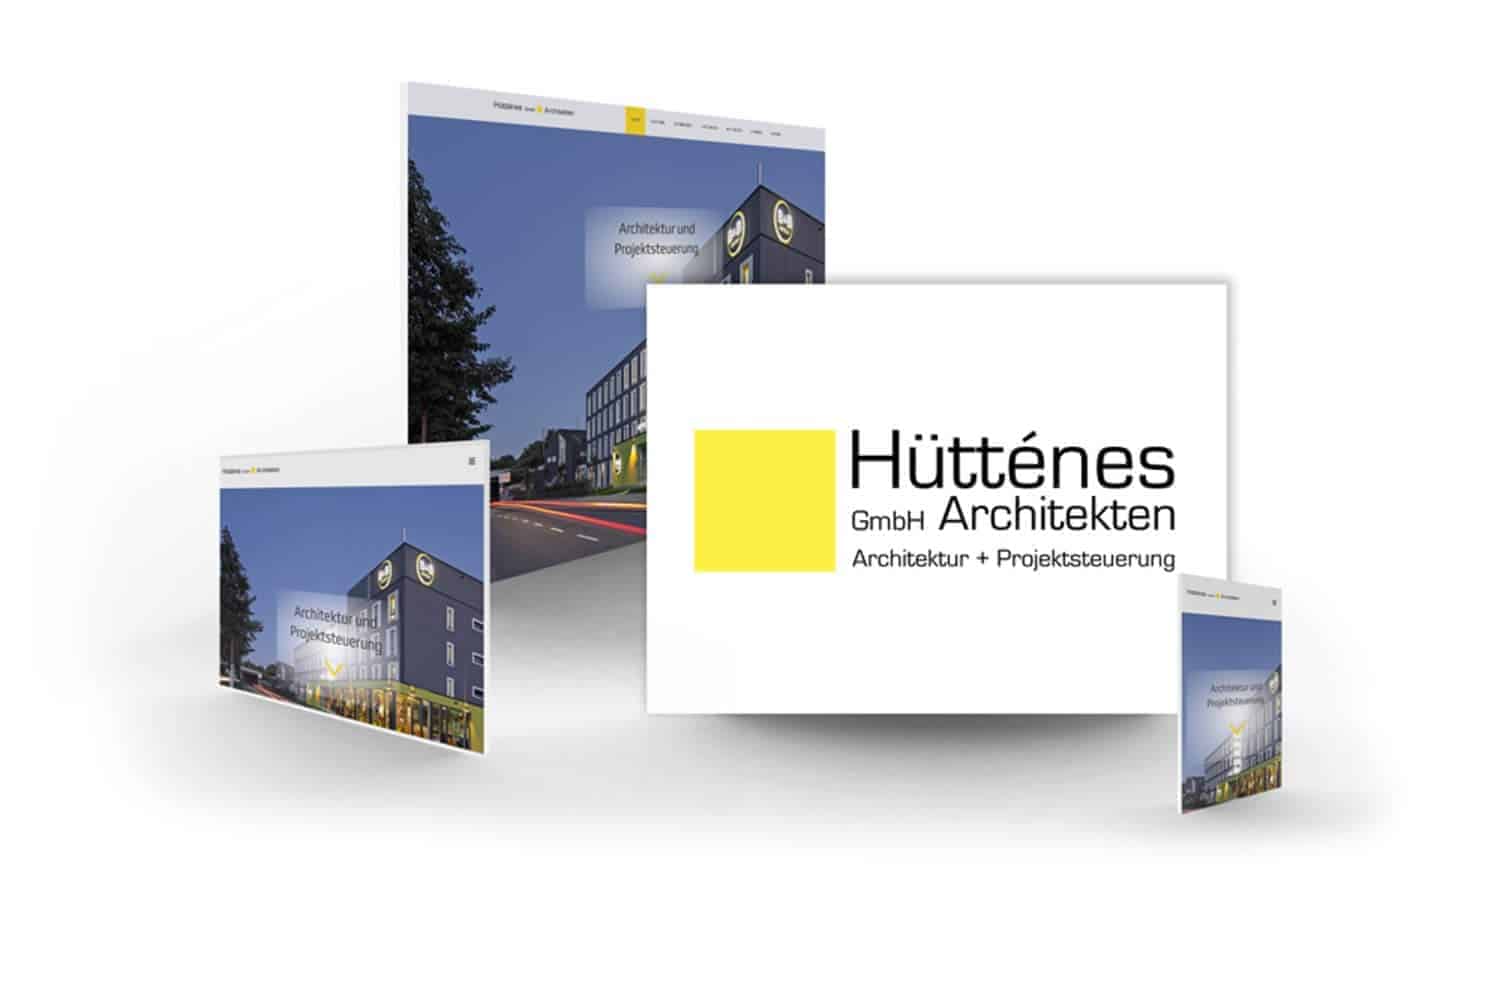 Referenz in Mülheim an der Ruhr / Berlin / Bremen - Hütténes GmbH Architekten